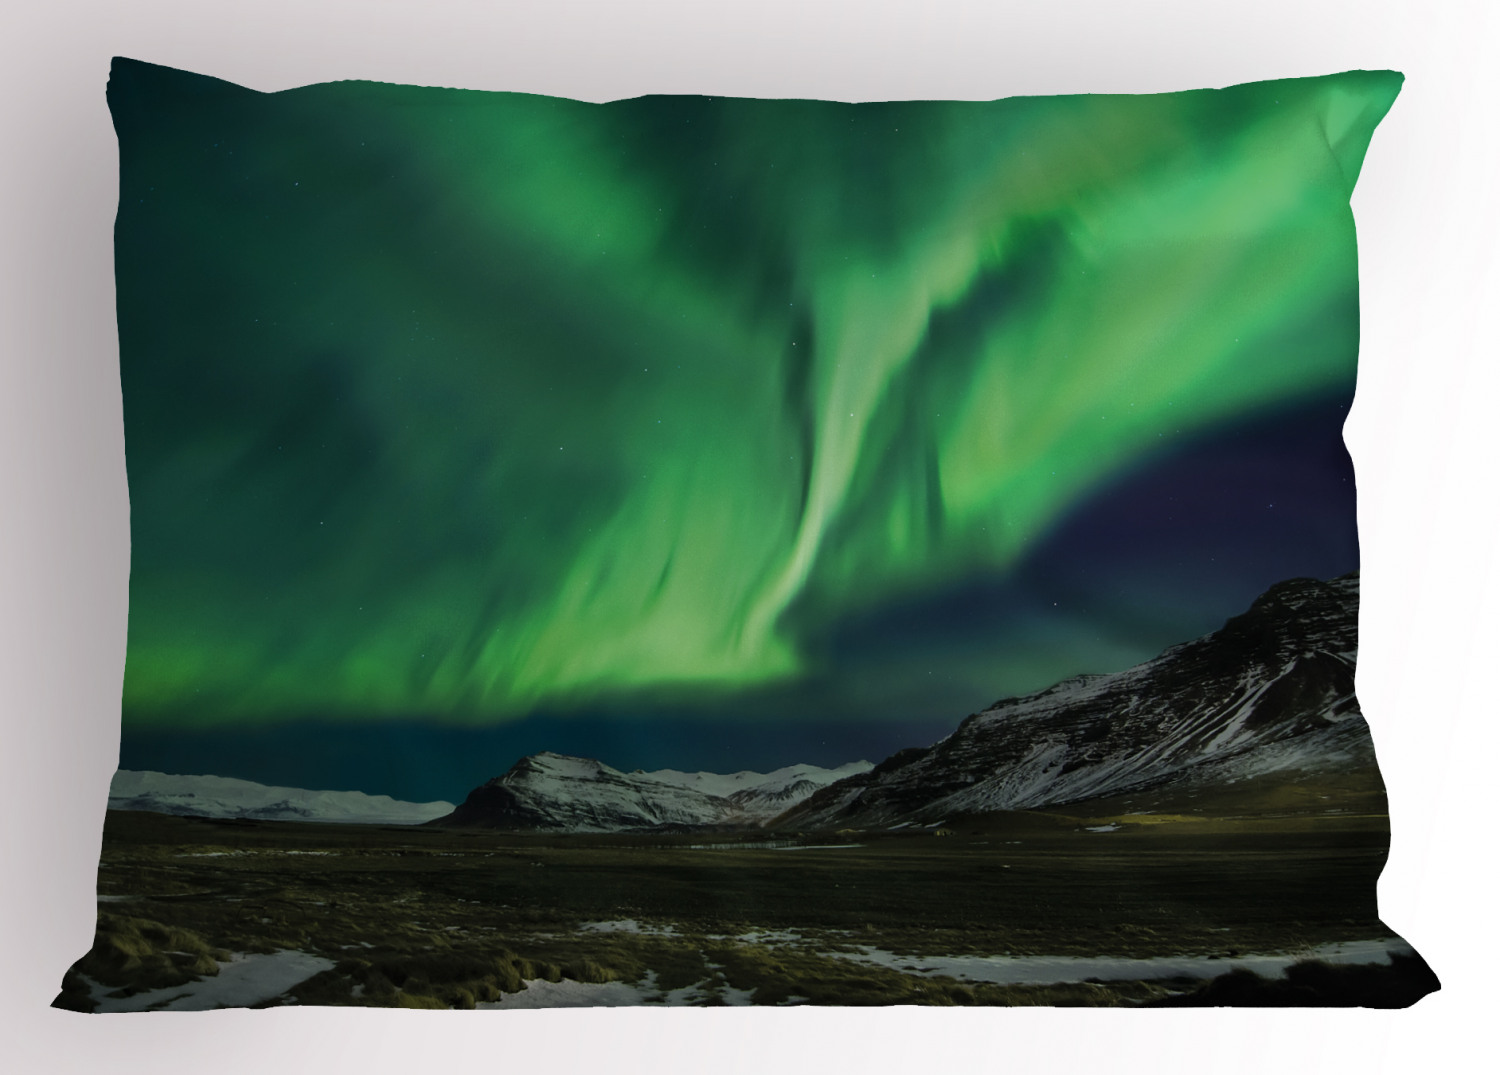 Details about   Aurora Borealis Pillow Sham Decorative Pillowcase 3 Sizes Bedroom Decoration 